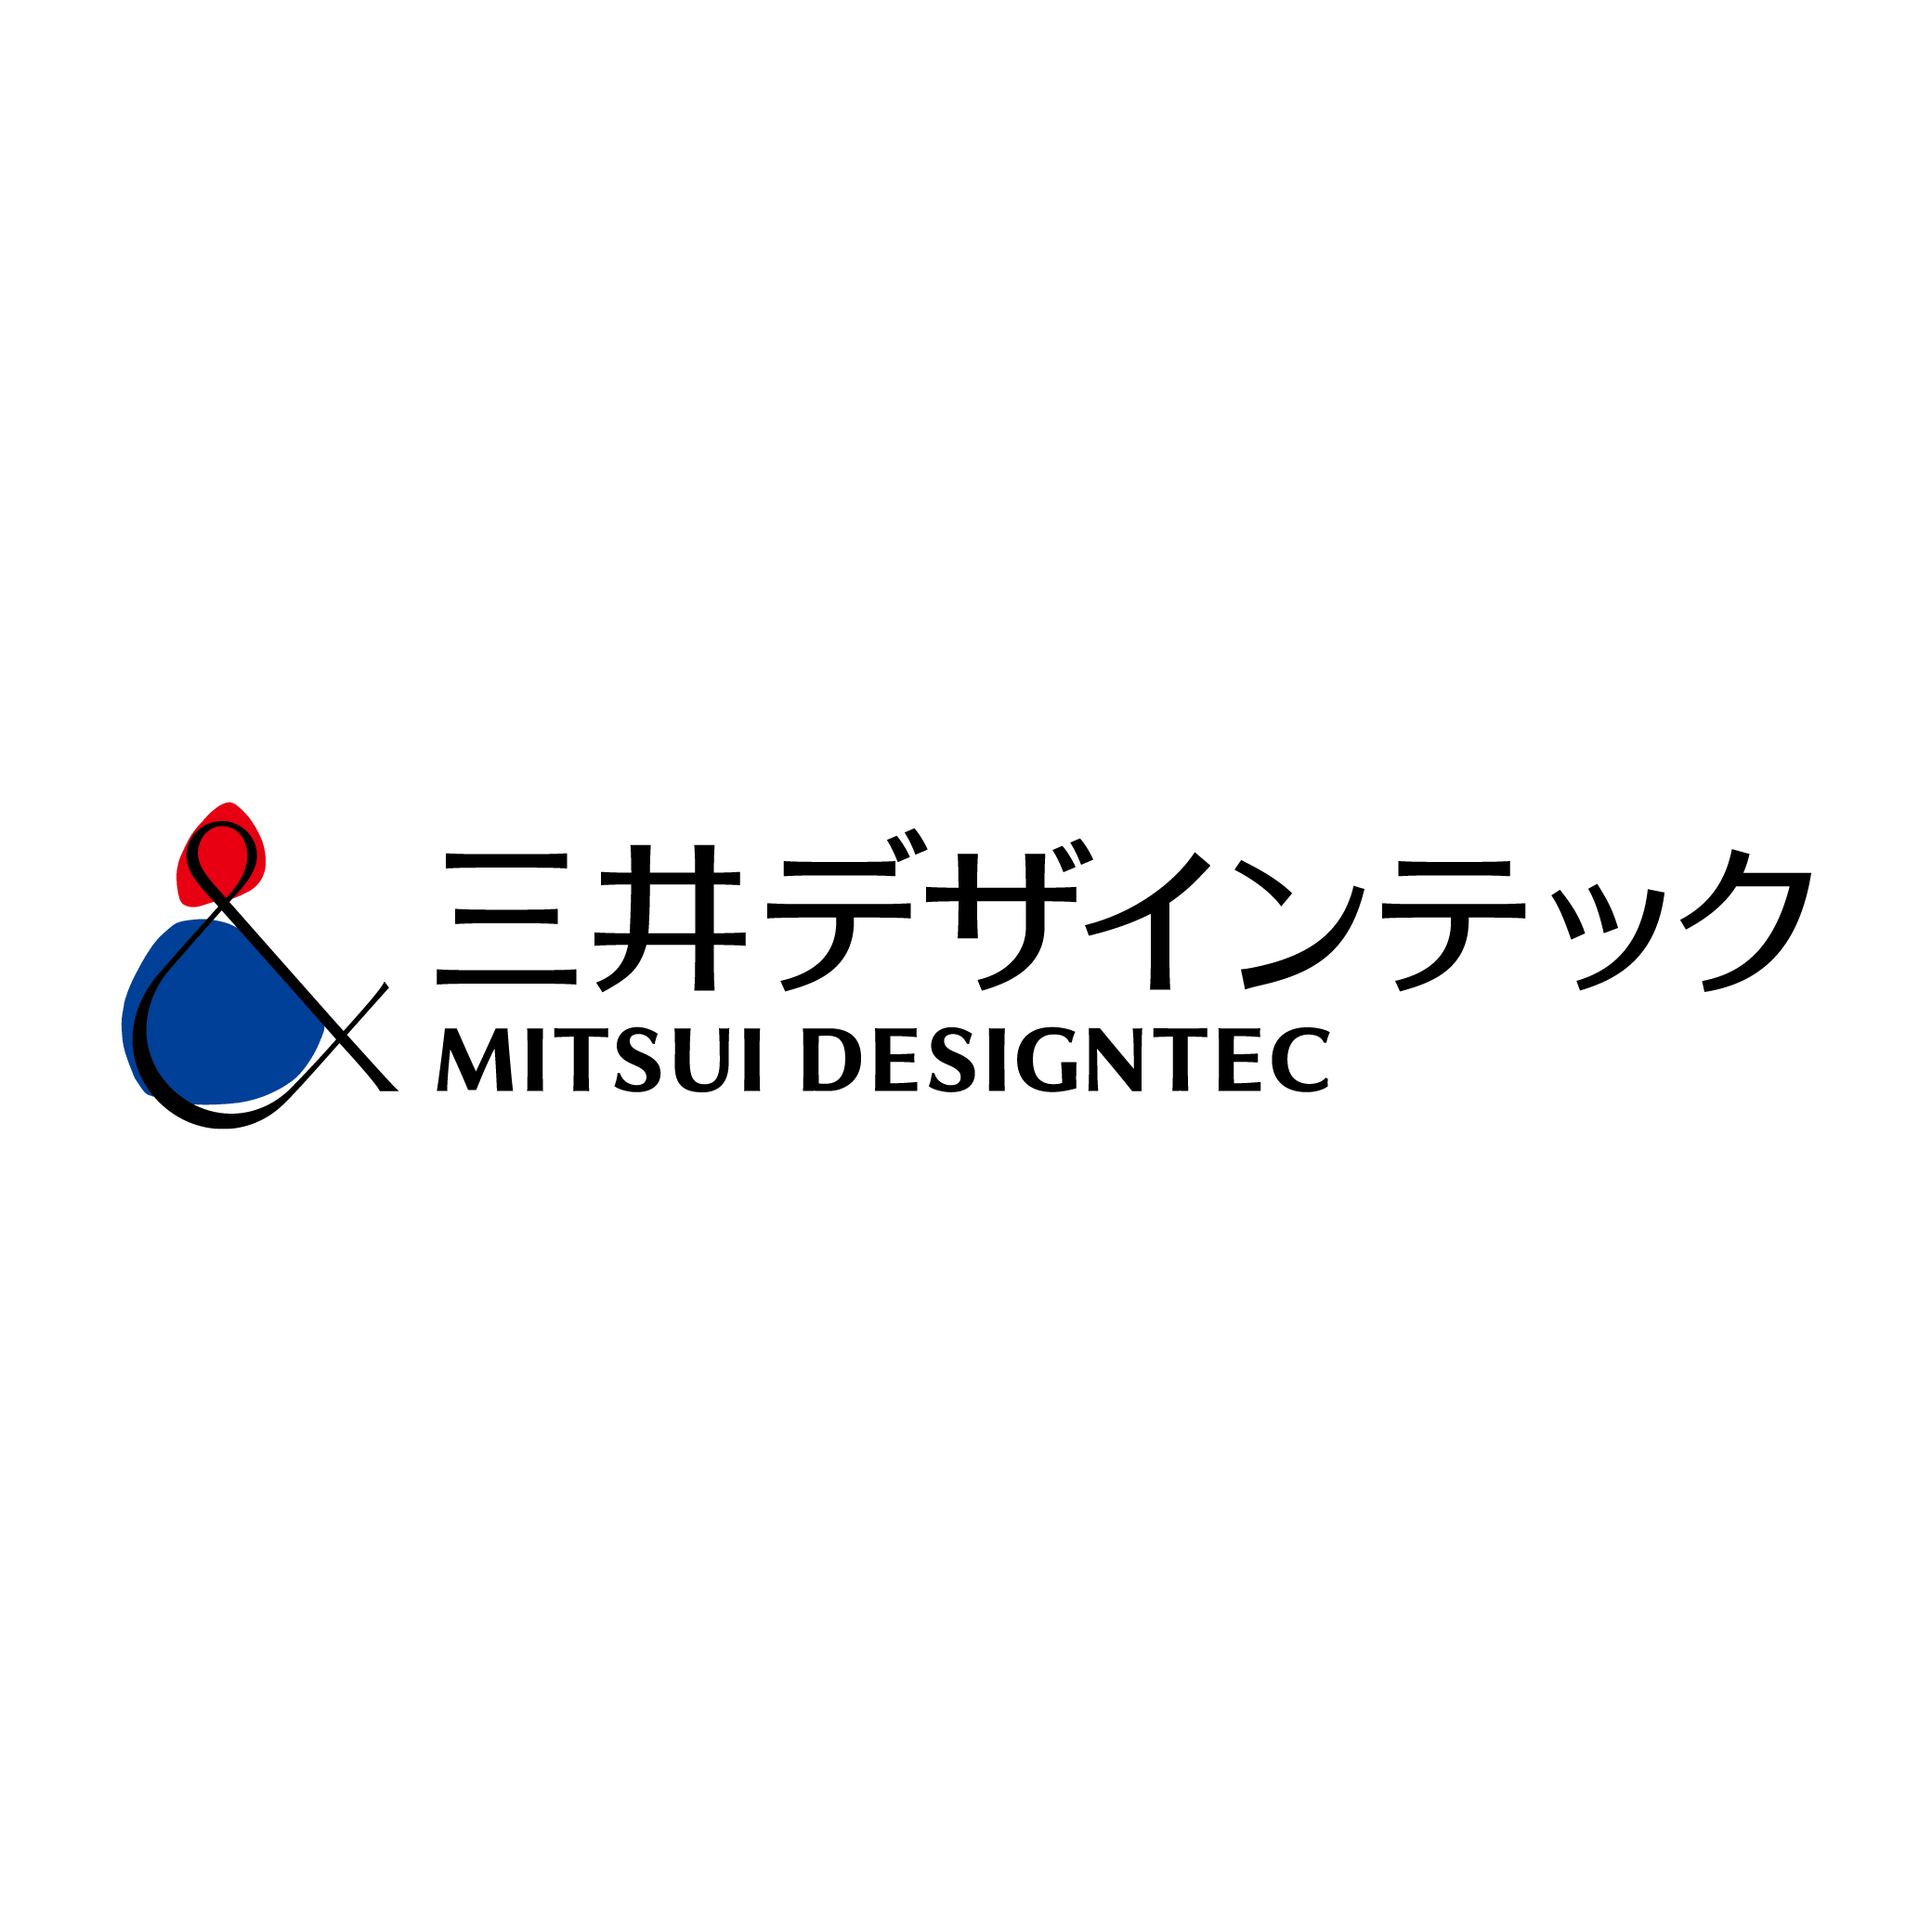 三井デザインテック株式会社